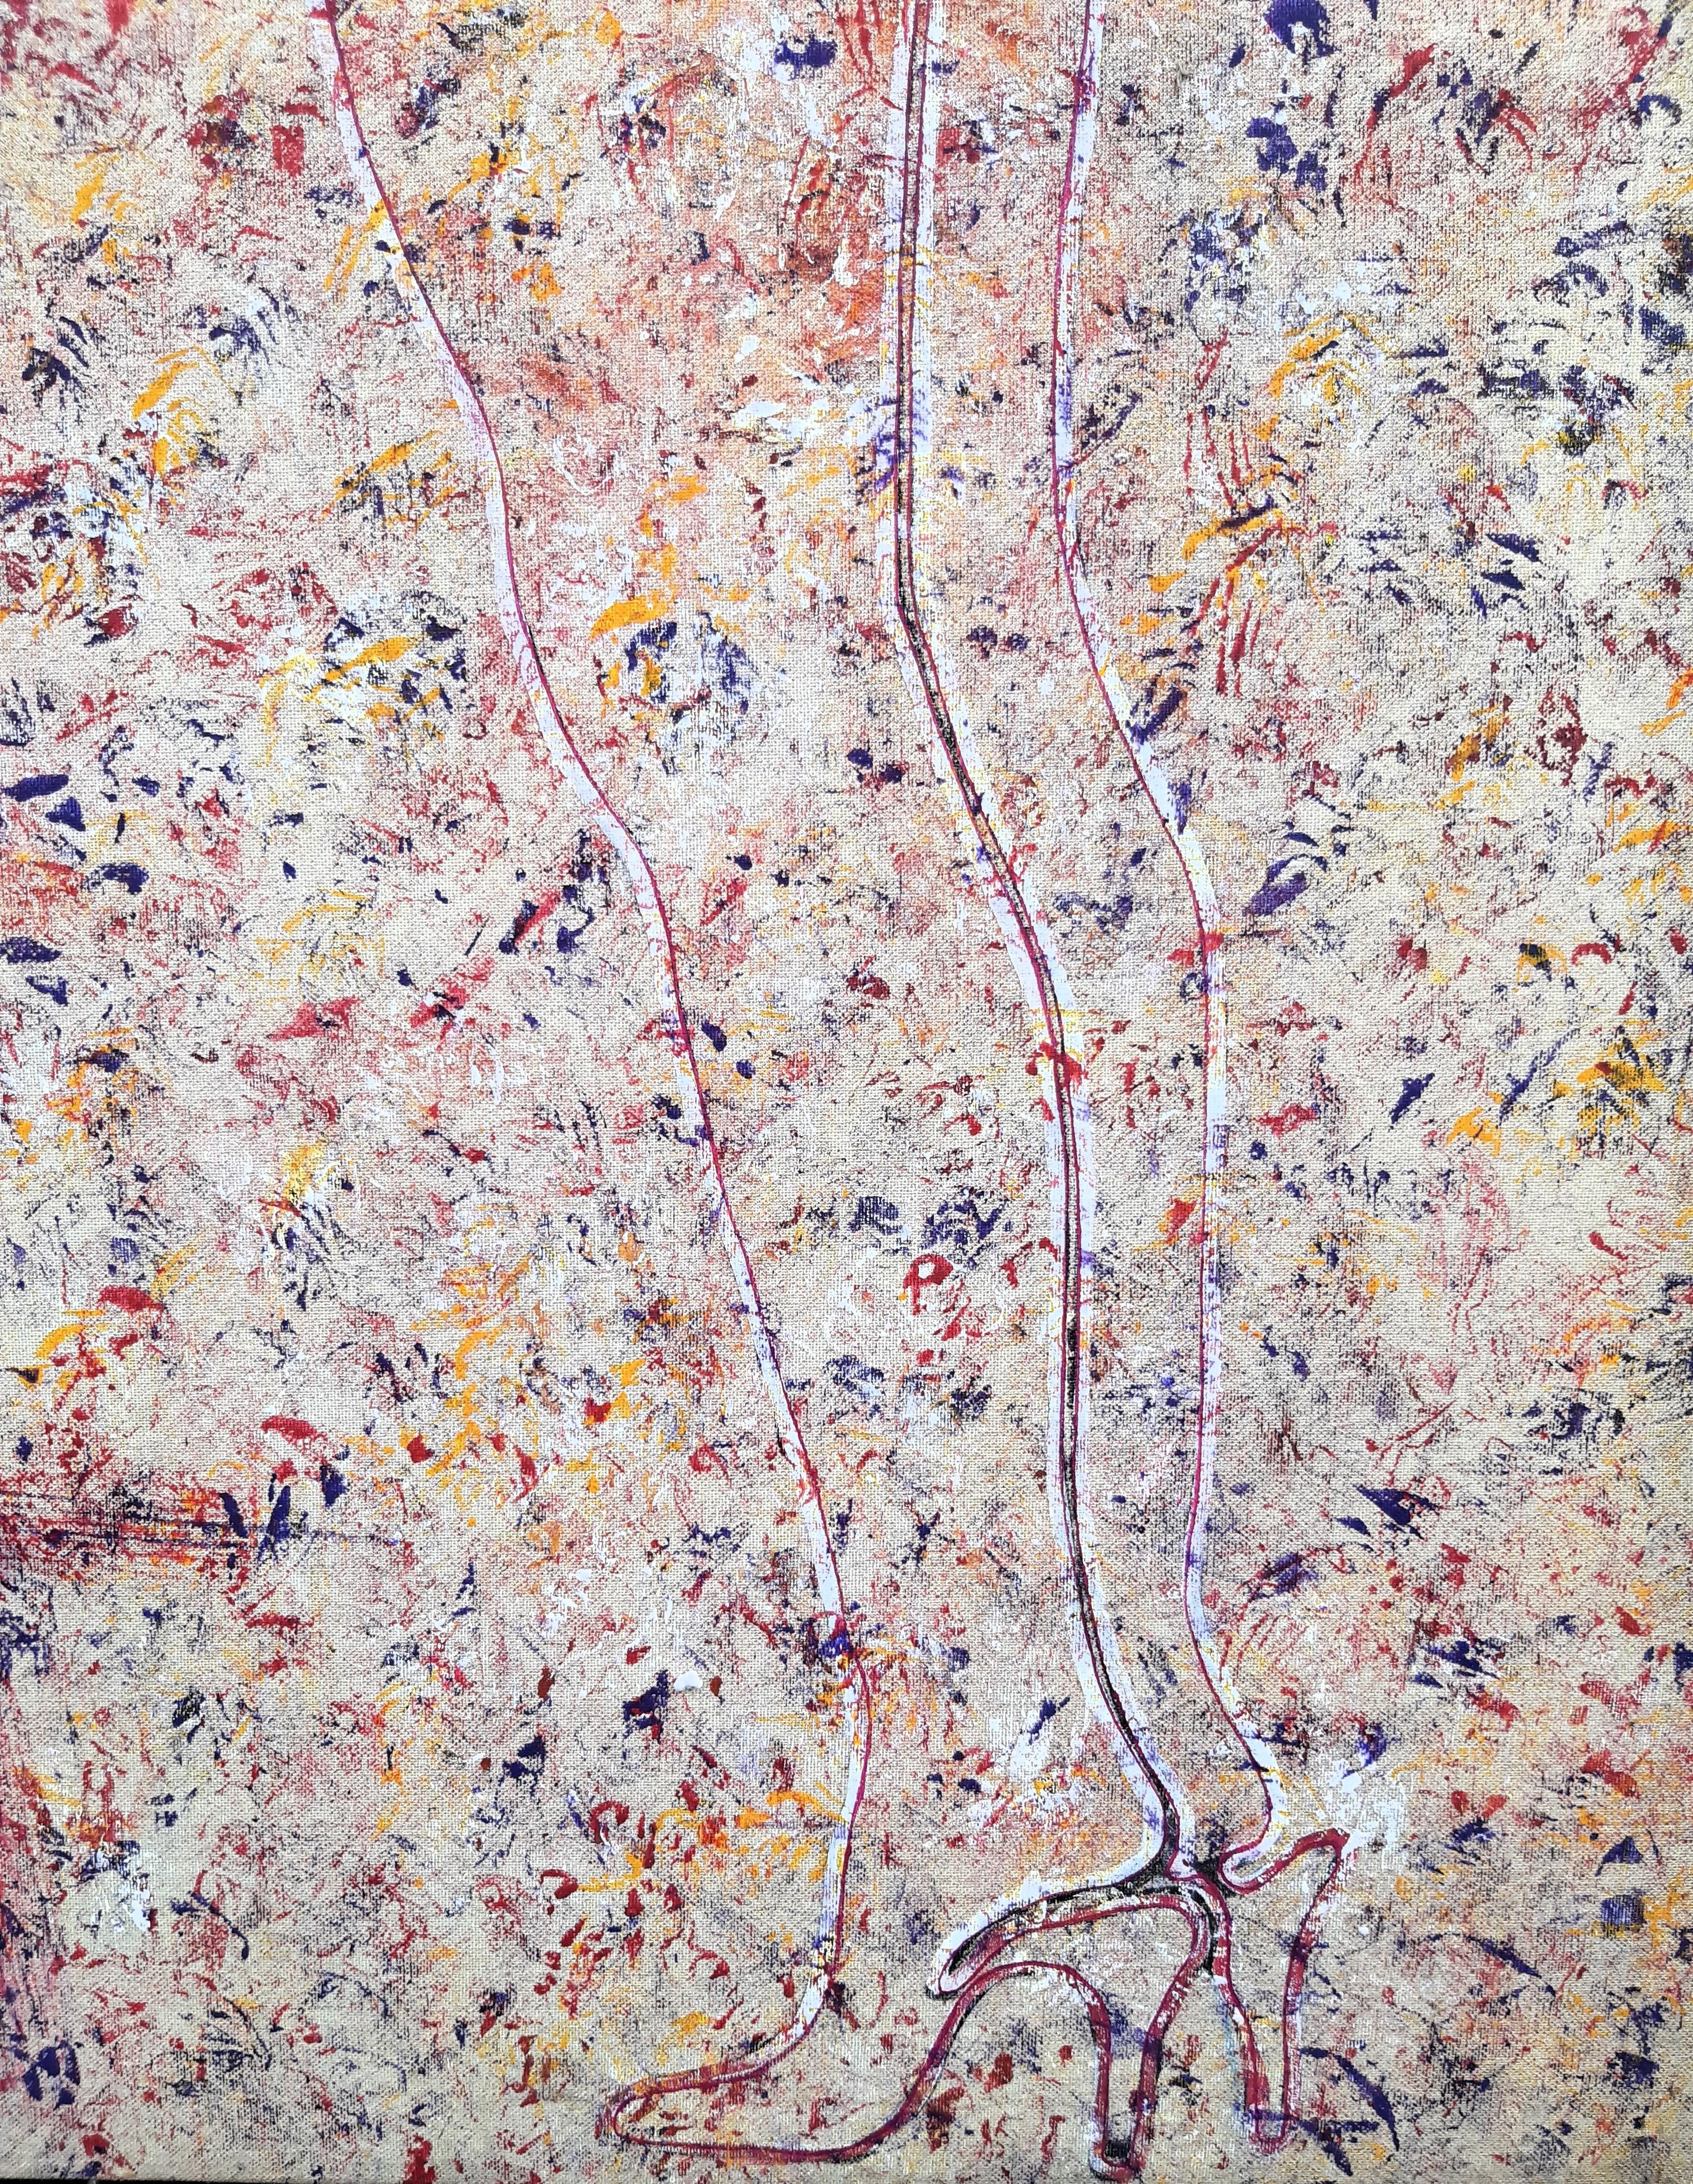 Gemälde AKT von Peter Patzak, entstanden wohl um 1980/-90.
Mischtechnik auf Leinwand, auf Keilrahmen gezogen, links unten um 90° gedreht collagierter Druck eines Frauengesichts aufgebracht. Links oben frontseitig signiert.

Zum Künstler:

Peter